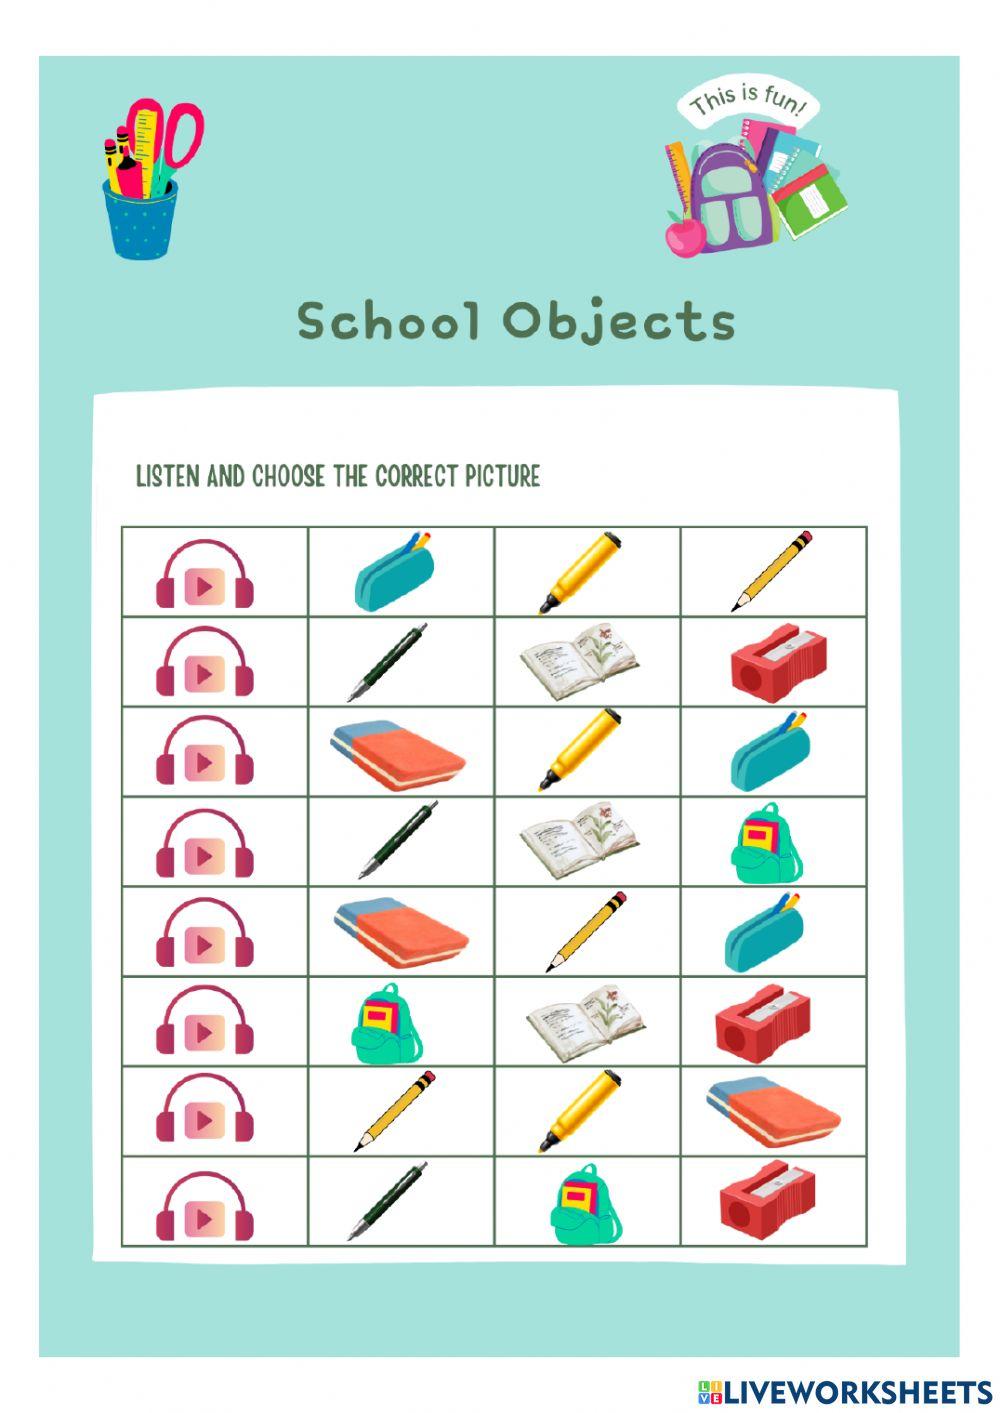 School object